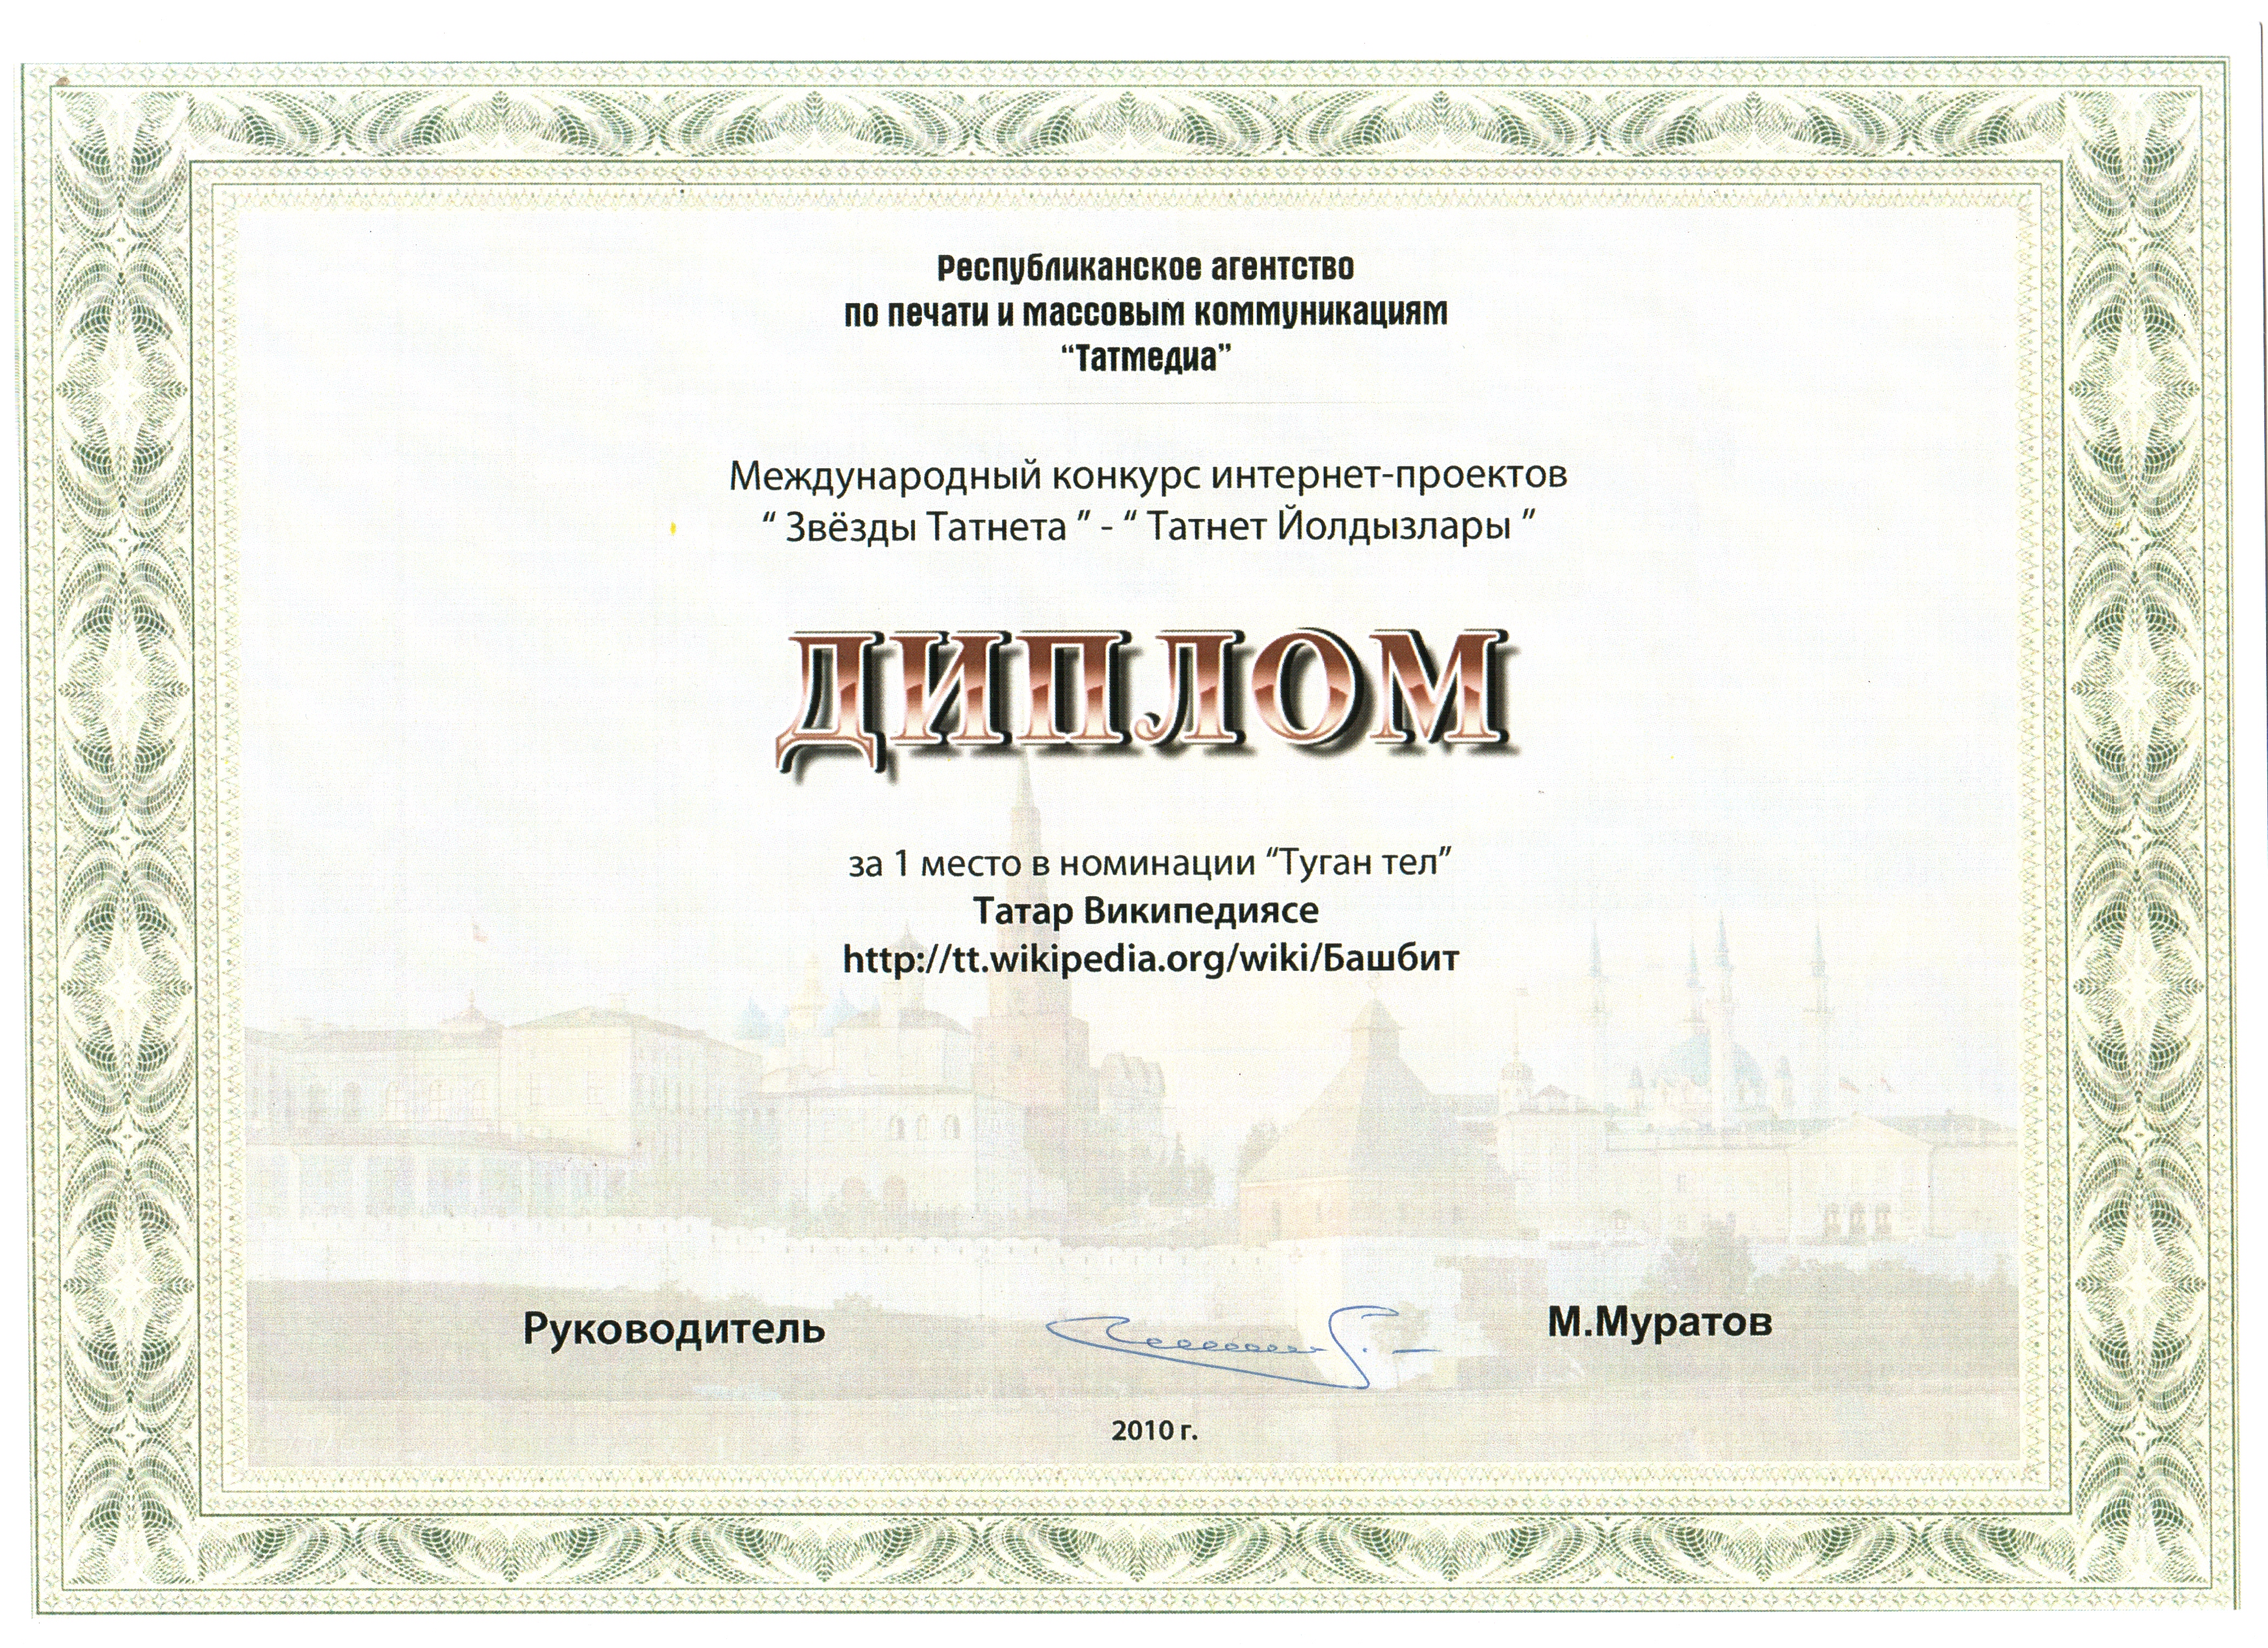 В 2010 году первое место в номинации «Туган тел» («Родной язык») снова заняла Татарская Википедия